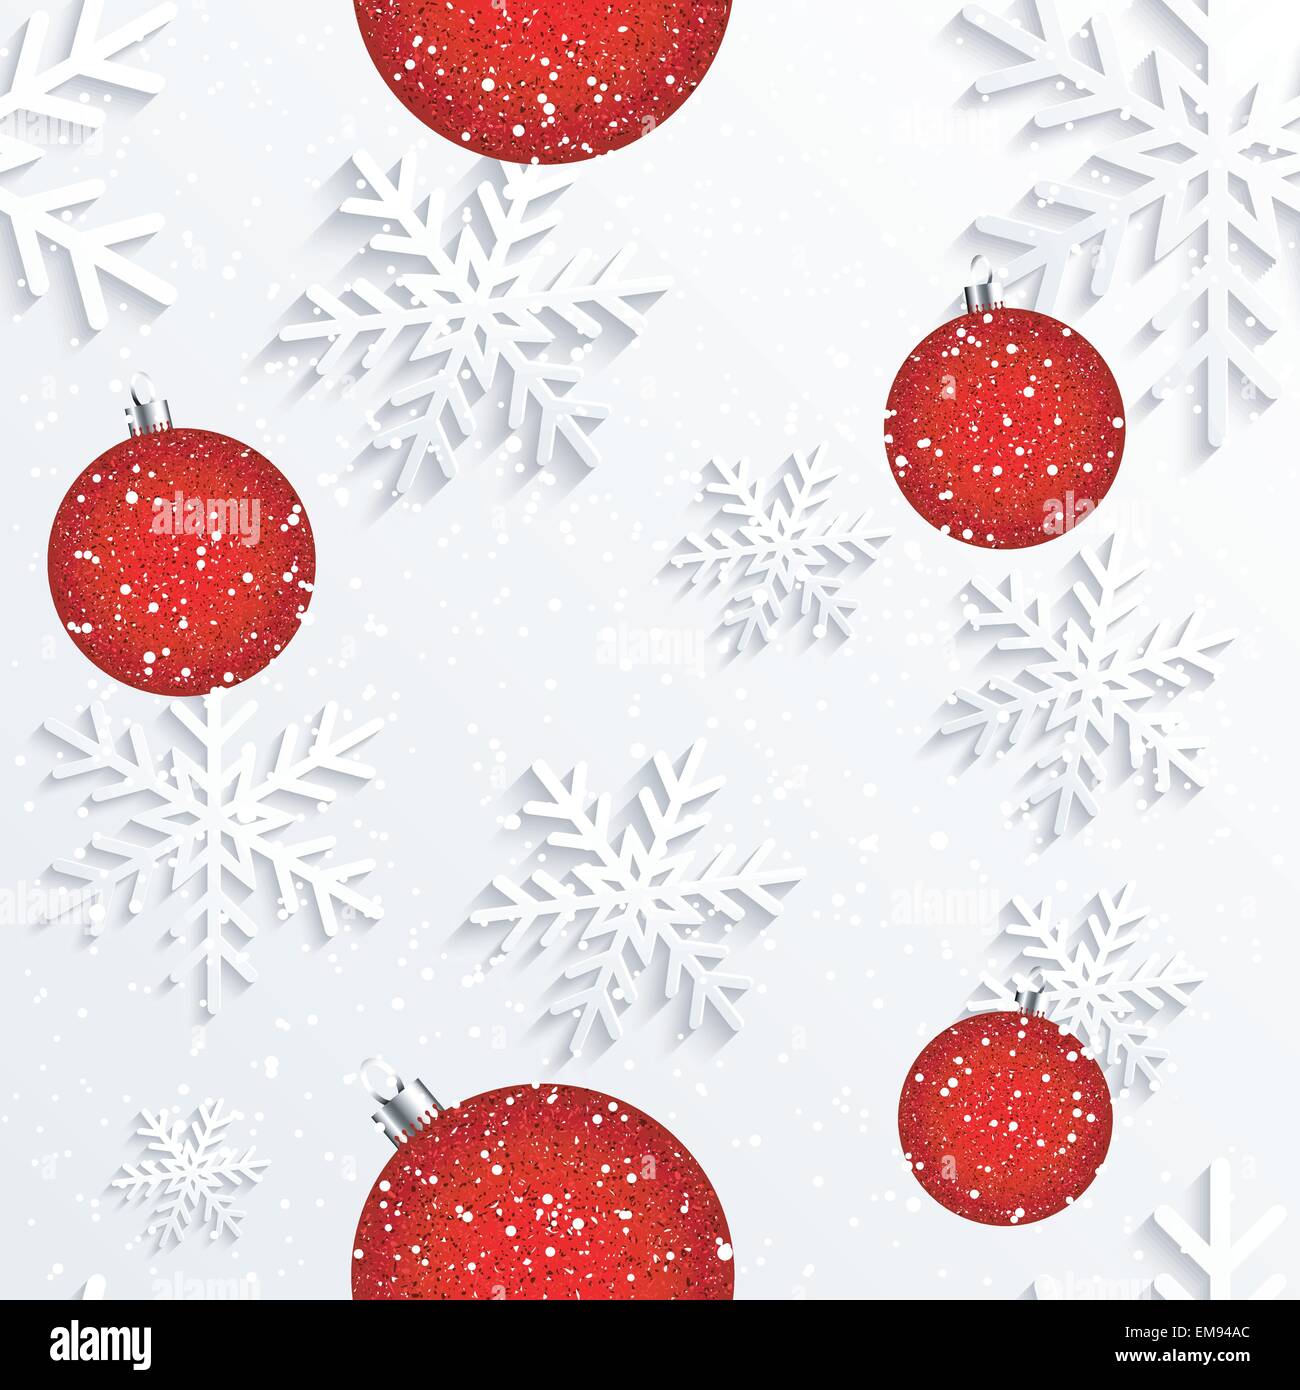 Weihnachten Schneeflocke weißer Hintergrund Stock Vektor